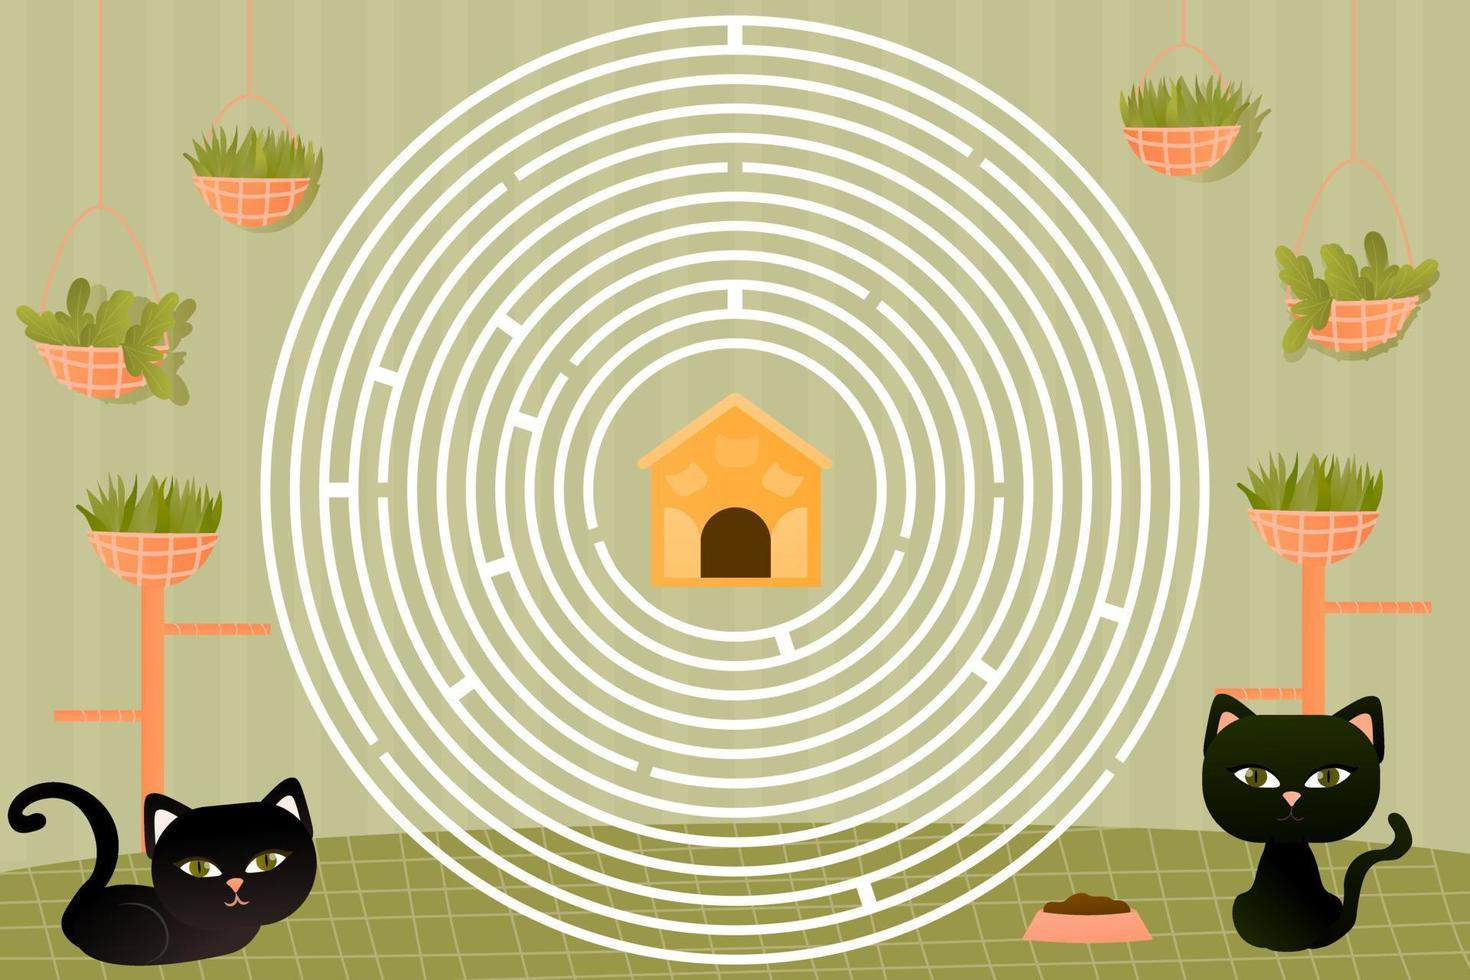 énigme pour les enfants en style dessin animé avec un personnage de chat noir coloré, aide à trouver le bon chemin vers la nourriture vecteur